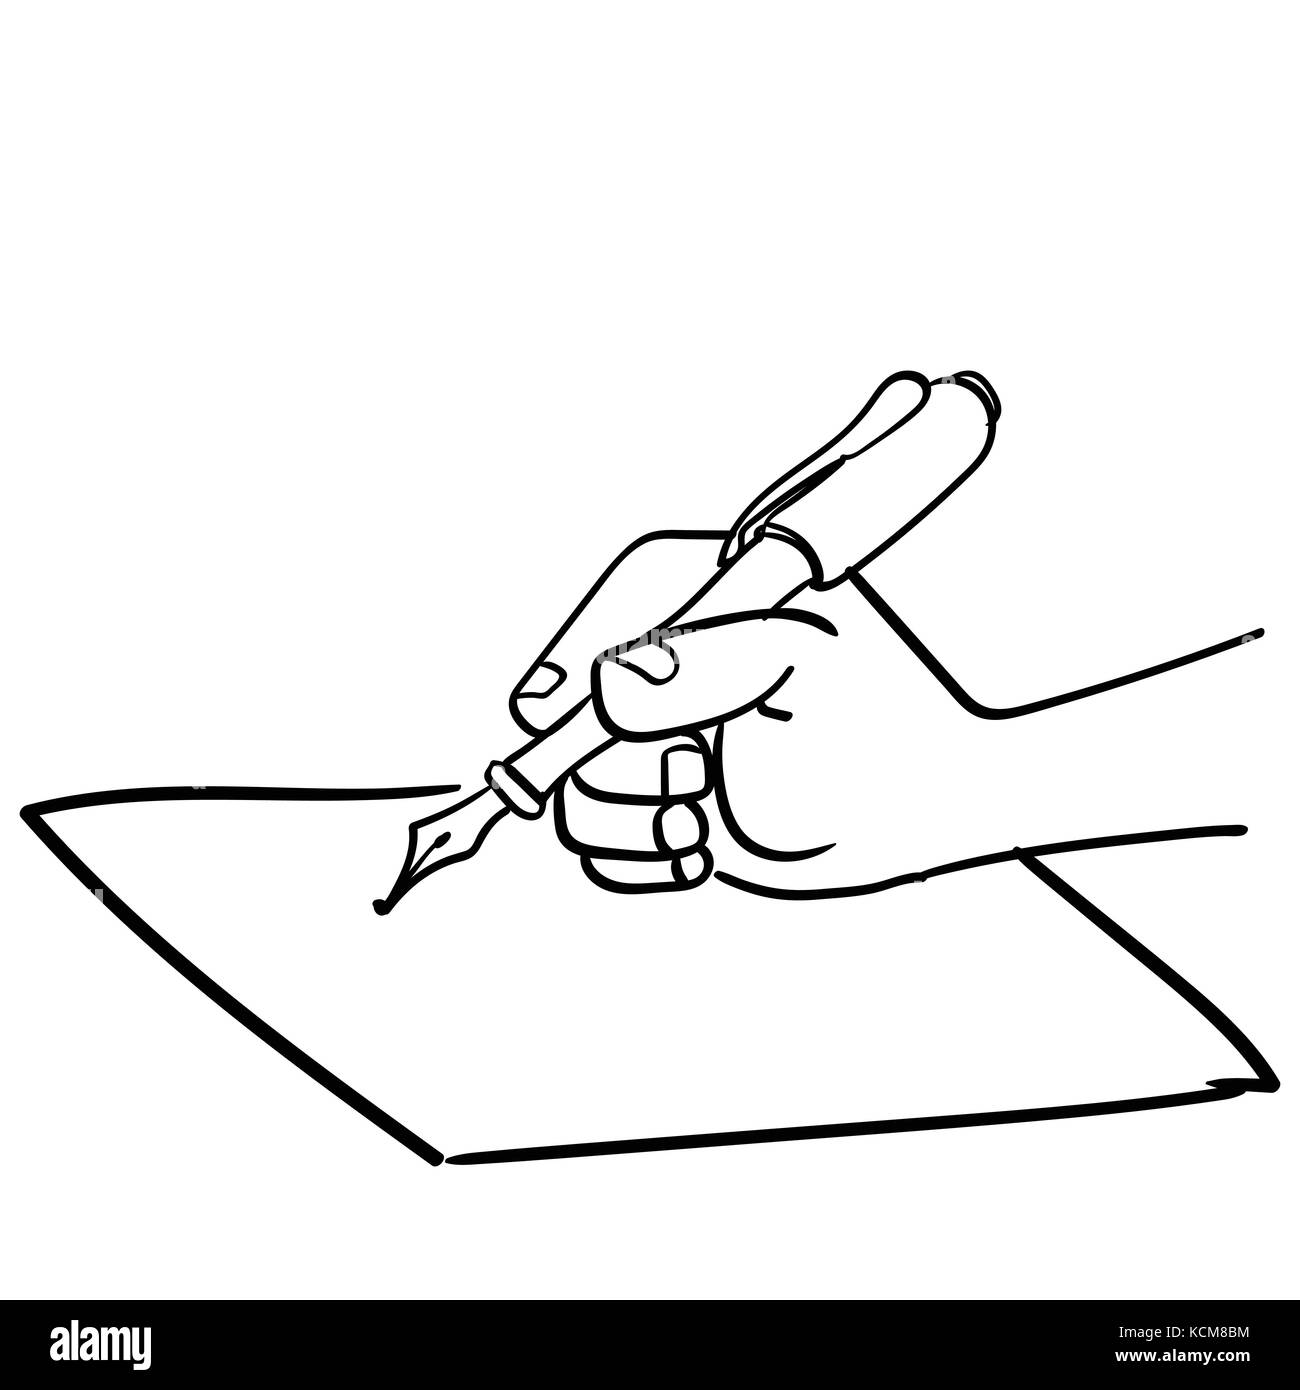 Cartoon la scrittura a mano con una penna in mano, close-up di una scrittura a mano su carta-disegnati a mano illustrazione vettoriale. Illustrazione Vettoriale